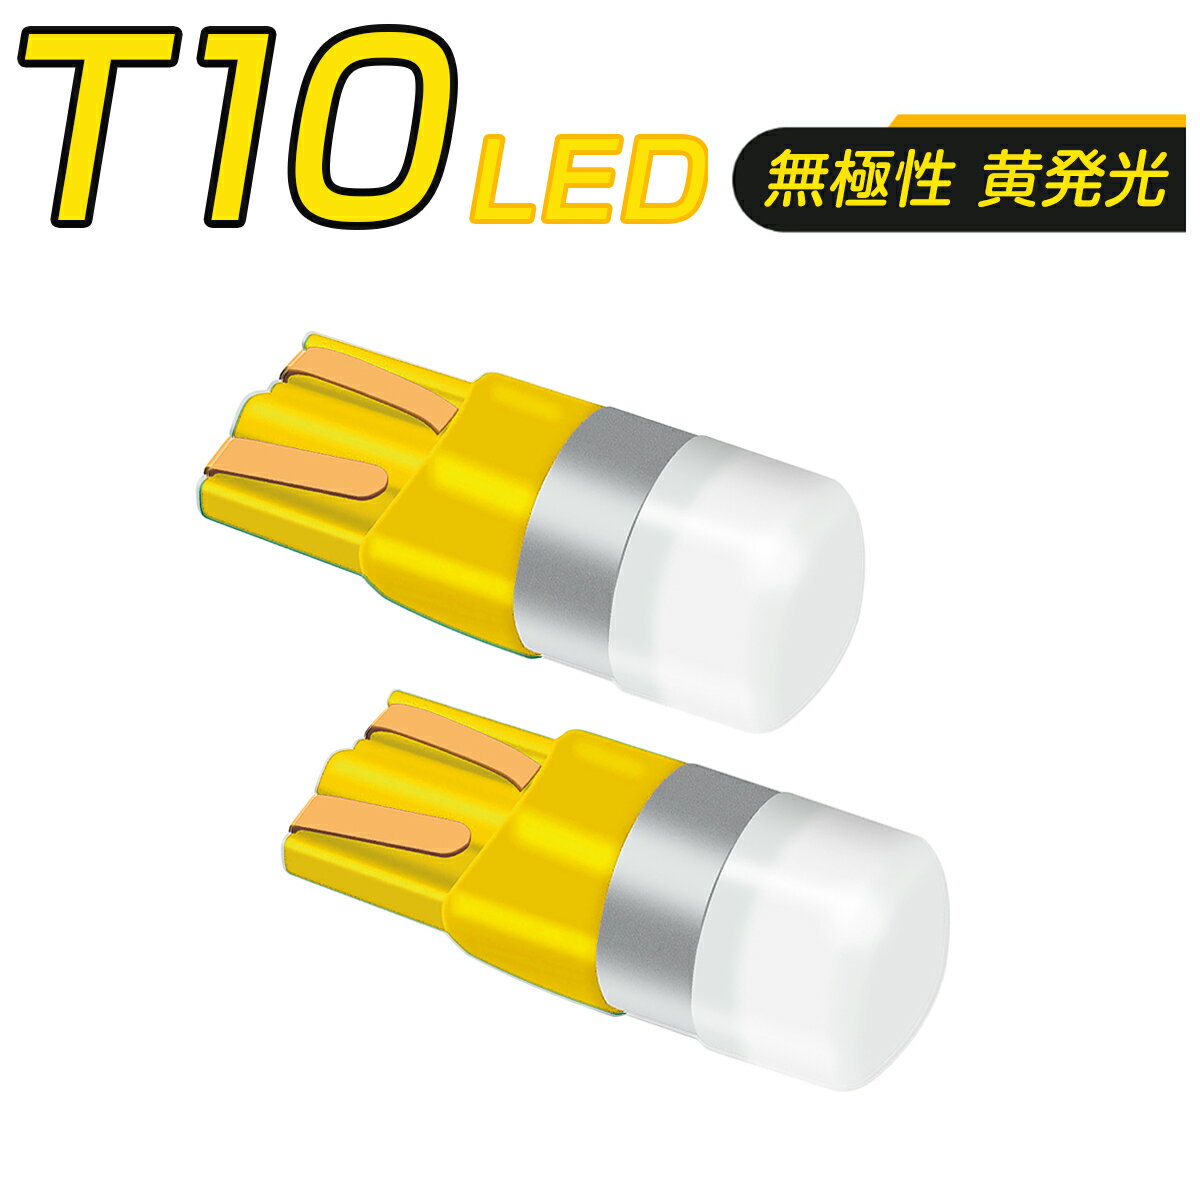 【仕様】・LEDチップ：OSRAM 3030 高輝度LEDチップ・ソケット：無極性 T10 (T13, T15, T16 共通)・明るさ：全光束150ルーメン・定格電圧：DC12V/24V・個数：2個セット【特徴】・ポジションランプ、サイドウインカー、ナンバープレート、ルームランプ、ハイマウントストップ、バックランプ等に適用します。・T10ウエッジバルブで、T13,T15,T16共通使用可能、コンパクトかつ明るいLEDバルブです。・バルブ側面にスリットデザインを採用することで、高い拡散性、単灯式バルブながらランプ全体を照射することが可能です。・ソケットに放熱用のスリットを入れ、その内側に熱伝導性に優れた銅合金を用い、高い放熱性と長寿命を実現しました。・無極性なので、極性を気にせずに装着が可能。ハイブリッド車などほぼ全車種に対応です。・ワーニングキャンセラー内蔵(※車種によってはワーニングキャンセル出来ない場合が御座いますので予めご了承下さい。)・発光効率に優れており、素子そのものは半永久的に使用可能です。・サイズは純正とほぼ同一ですので車種を選ばずほぼ全ての車両に取り付けできます。【注意事項】・車種、年式、型式が一致していても、車種別適合の情報と異なる場合があり、必ずご購入前に車両に装着されているバルブ形状・サイズ等をご確認ください。・この車種適合の商品ページについては、細心の注意を払い、正確に保つよう努めておりますが、万一実際の車両に装着されている電球と形状・サイズ等が異なっていた場合、弊社では一切の保証ができません。・純正品ではなく、様々な車種に対応する汎用の社外品なので、ウインカーハイフラ発生した場合、ハイフラ防止抵抗キャンセラーを付けたり、ライトを取り付けの際、車種によるバンパー外したり、一部加工が必要になる場合がございます。・一部外車、CANBUS制御車により、別途警告灯ワーニングキャンセラーの対応が必要の場合がございます。・取り付けの前に必ず動作確認を行ってください。取り付けについては、サポートしておりませんので、整備工場やディーラーにて行ってください。車検基準適合品ですが、車検保証まではできかねます。・正しく装着をされなかった場合の事故や不具合に関し、当社はいかなる理由に関わらず、保証対応外となり、一切の責任を負いかねます。・加工、取付ミスの場合は、いかなる理由でも返品・交換は出来ません。不良品交換、脱着、取付工賃、損害等、製品以外に発生したいかなる費用も保証いたしません。・電圧12V/24V対応の製品については、中型・大型トラック、バス、クレーン車、ショベルカー、特殊自動車等には24Vであっても、瞬間起動電圧・電流が高いので、対応しません。・製品改良のため、仕様および外観の一部を予告なく変更することがございます、ご了承ください。【仕様】・LEDチップ：OSRAM 3030 高輝度LEDチップ・ソケット：無極性 T10 (T13, T15, T16 共通)・明るさ：全光束150ルーメン・定格電圧：DC12V/24V・個数：2個セット【特徴】・ポジションランプ、サイドウインカー、ナンバープレート、ルームランプ、ハイマウントストップ、バックランプ等に適用します。・T10ウエッジバルブで、T13,T15,T16共通使用可能、コンパクトかつ明るいLEDバルブです。・バルブ側面にスリットデザインを採用することで、高い拡散性、単灯式バルブながらランプ全体を照射することが可能です。・ソケットに放熱用のスリットを入れ、その内側に熱伝導性に優れた銅合金を用い、高い放熱性と長寿命を実現しました。・無極性なので、極性を気にせずに装着が可能。ハイブリッド車などほぼ全車種に対応です。・ワーニングキャンセラー内蔵(※車種によってはワーニングキャンセル出来ない場合が御座いますので予めご了承下さい。)・発光効率に優れており、素子そのものは半永久的に使用可能です。・サイズは純正とほぼ同一ですので車種を選ばずほぼ全ての車両に取り付けできます。【注意事項】・車種、年式、型式が一致していても、車種別適合の情報と異なる場合があり、必ずご購入前に車両に装着されているバルブ形状・サイズ等をご確認ください。・この車種適合の商品ページについては、細心の注意を払い、正確に保つよう努めておりますが、万一実際の車両に装着されている電球と形状・サイズ等が異なっていた場合、弊社では一切の保証ができません。・純正品ではなく、様々な車種に対応する汎用の社外品なので、ウインカーハイフラ発生した場合、ハイフラ防止抵抗キャンセラーを付けたり、ライトを取り付けの際、車種によるバンパー外したり、一部加工が必要になる場合がございます。・一部外車、CANBUS制御車により、別途警告灯ワーニングキャンセラーの対応が必要の場合がございます。・取り付けの前に必ず動作確認を行ってください。取り付けについては、サポートしておりませんので、整備工場やディーラーにて行ってください。車検基準適合品ですが、車検保証まではできかねます。・正しく装着をされなかった場合の事故や不具合に関し、当社はいかなる理由に関わらず、保証対応外となり、一切の責任を負いかねます。・加工、取付ミスの場合は、いかなる理由でも返品・交換は出来ません。不良品交換、脱着、取付工賃、損害等、製品以外に発生したいかなる費用も保証いたしません。・電圧12V/24V対応の製品については、中型・大型トラック、バス、クレーン車、ショベルカー、特殊自動車等には24Vであっても、瞬間起動電圧・電流が高いので、対応しません。・製品改良のため、仕様および外観の一部を予告なく変更することがございます、ご了承ください。